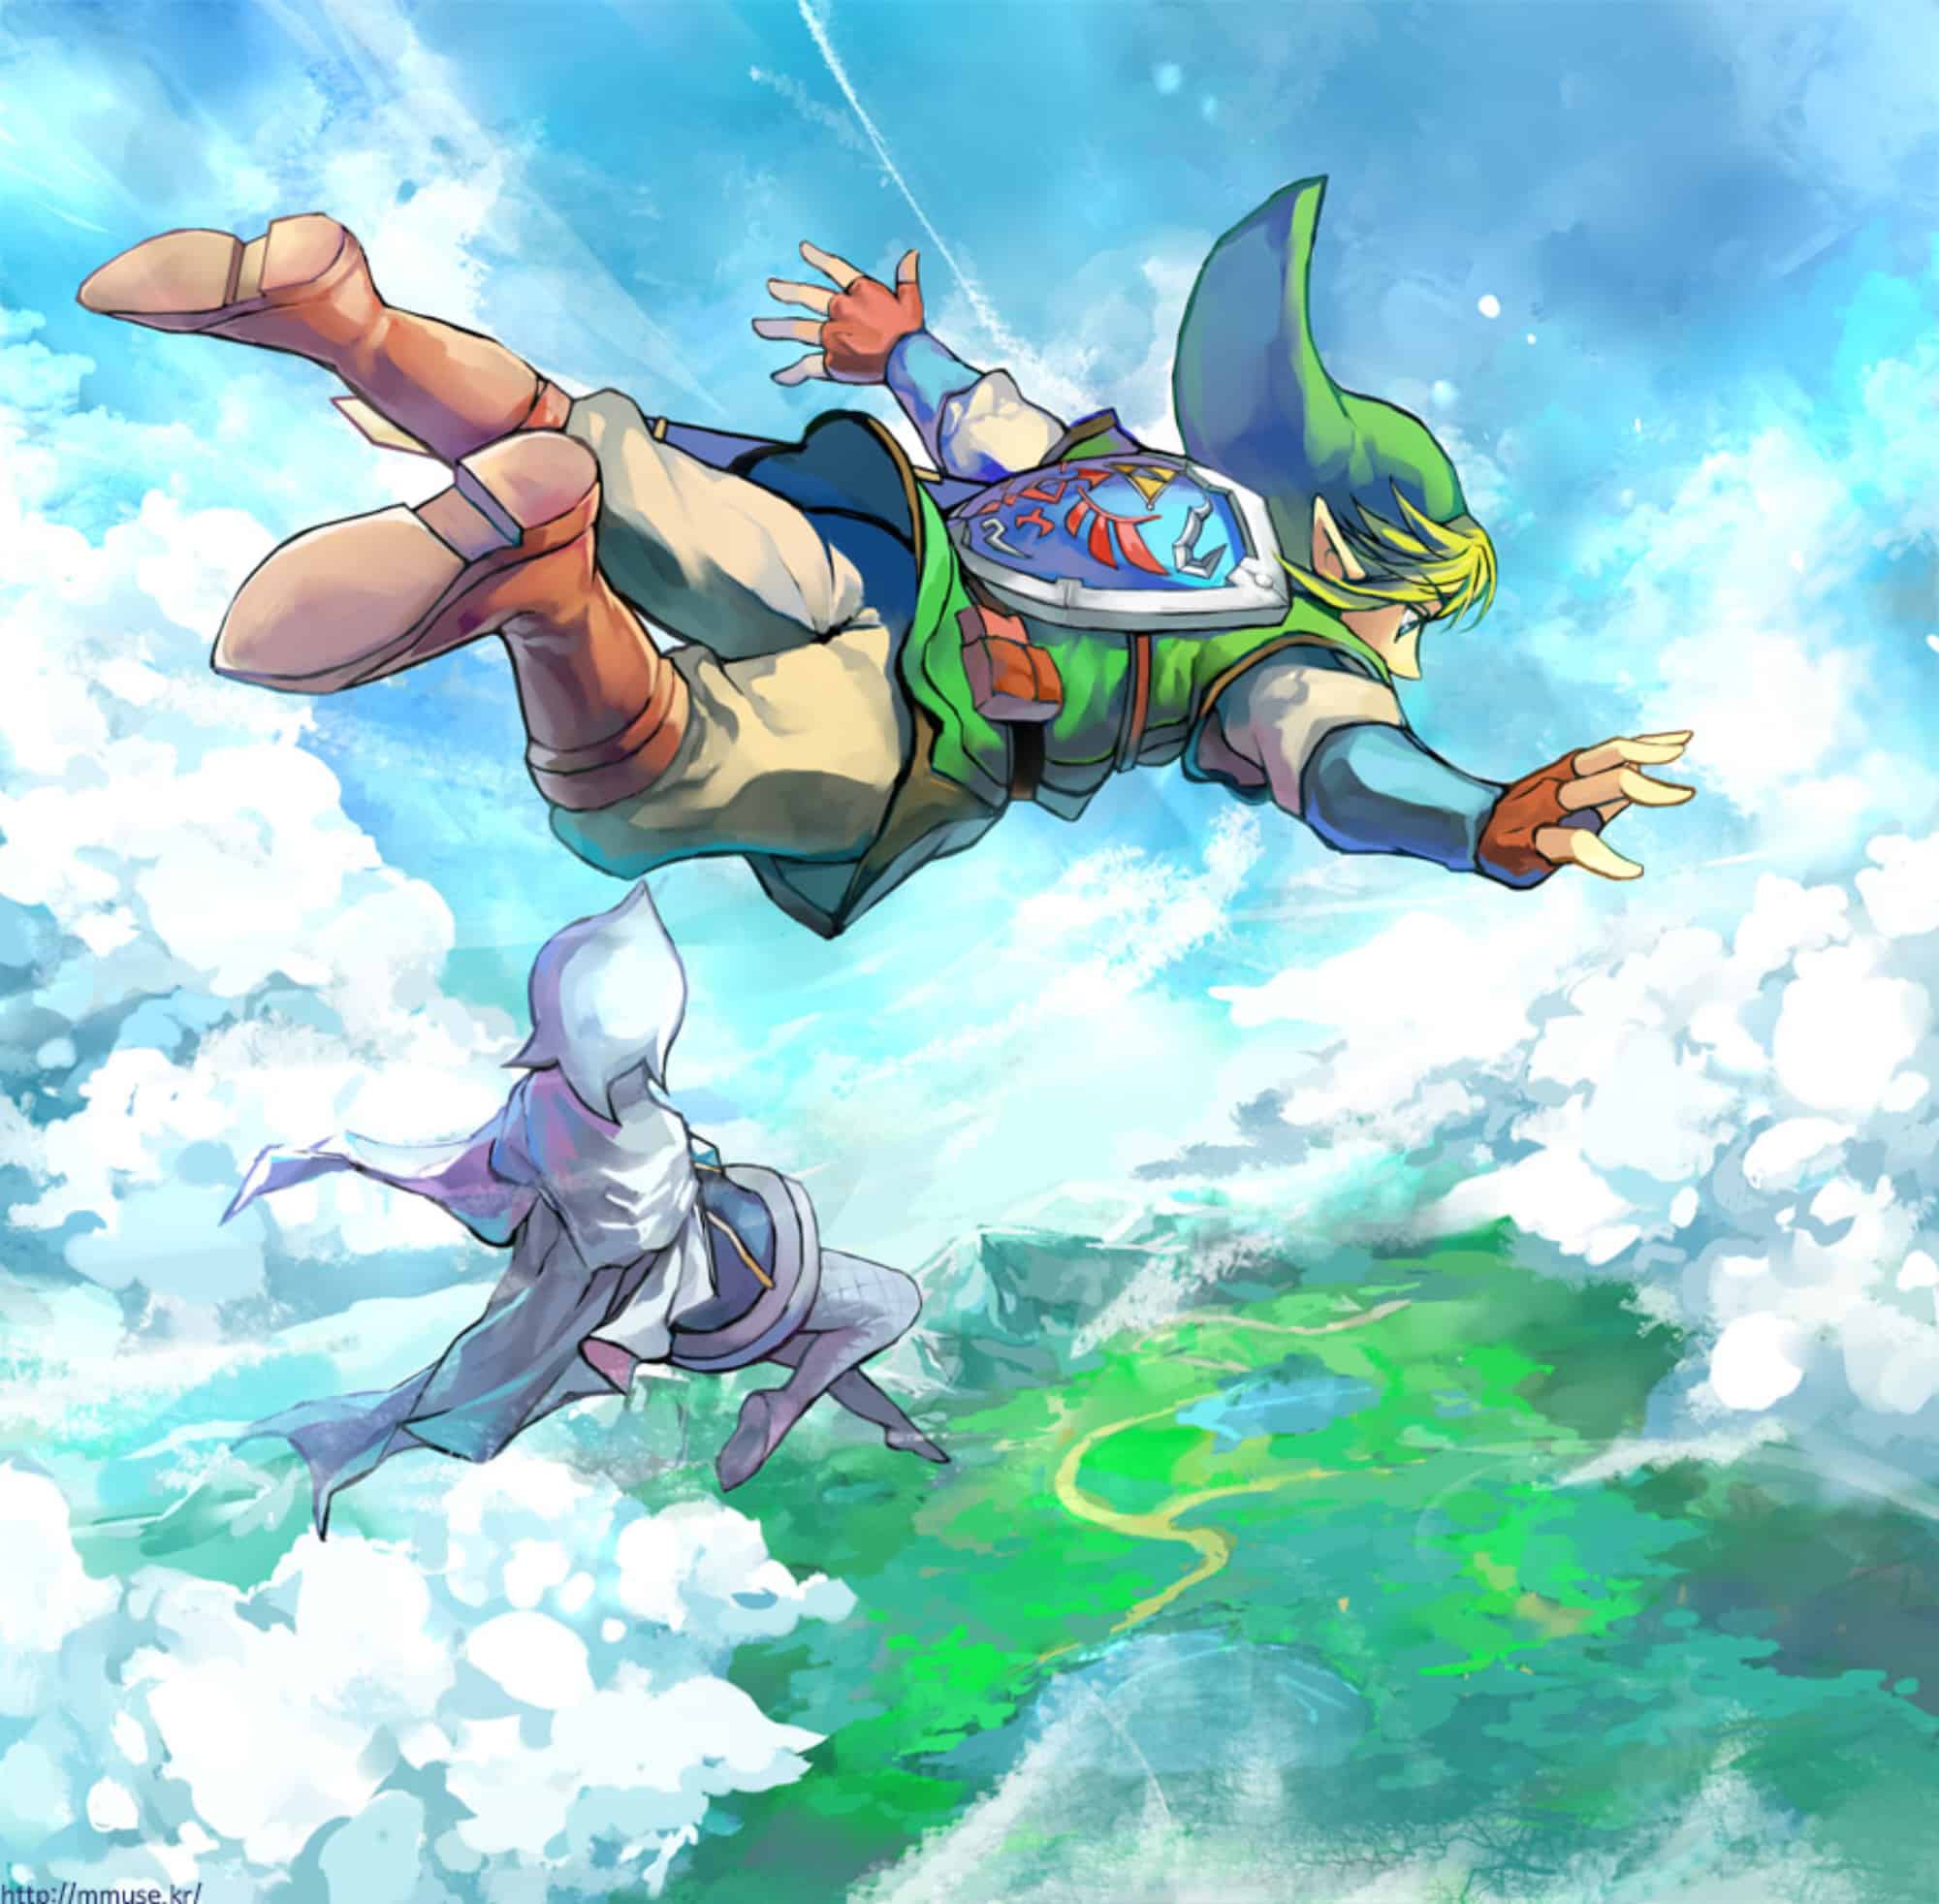 The Legend of Zelda: Skyward Sword Wallpaper Freefalling